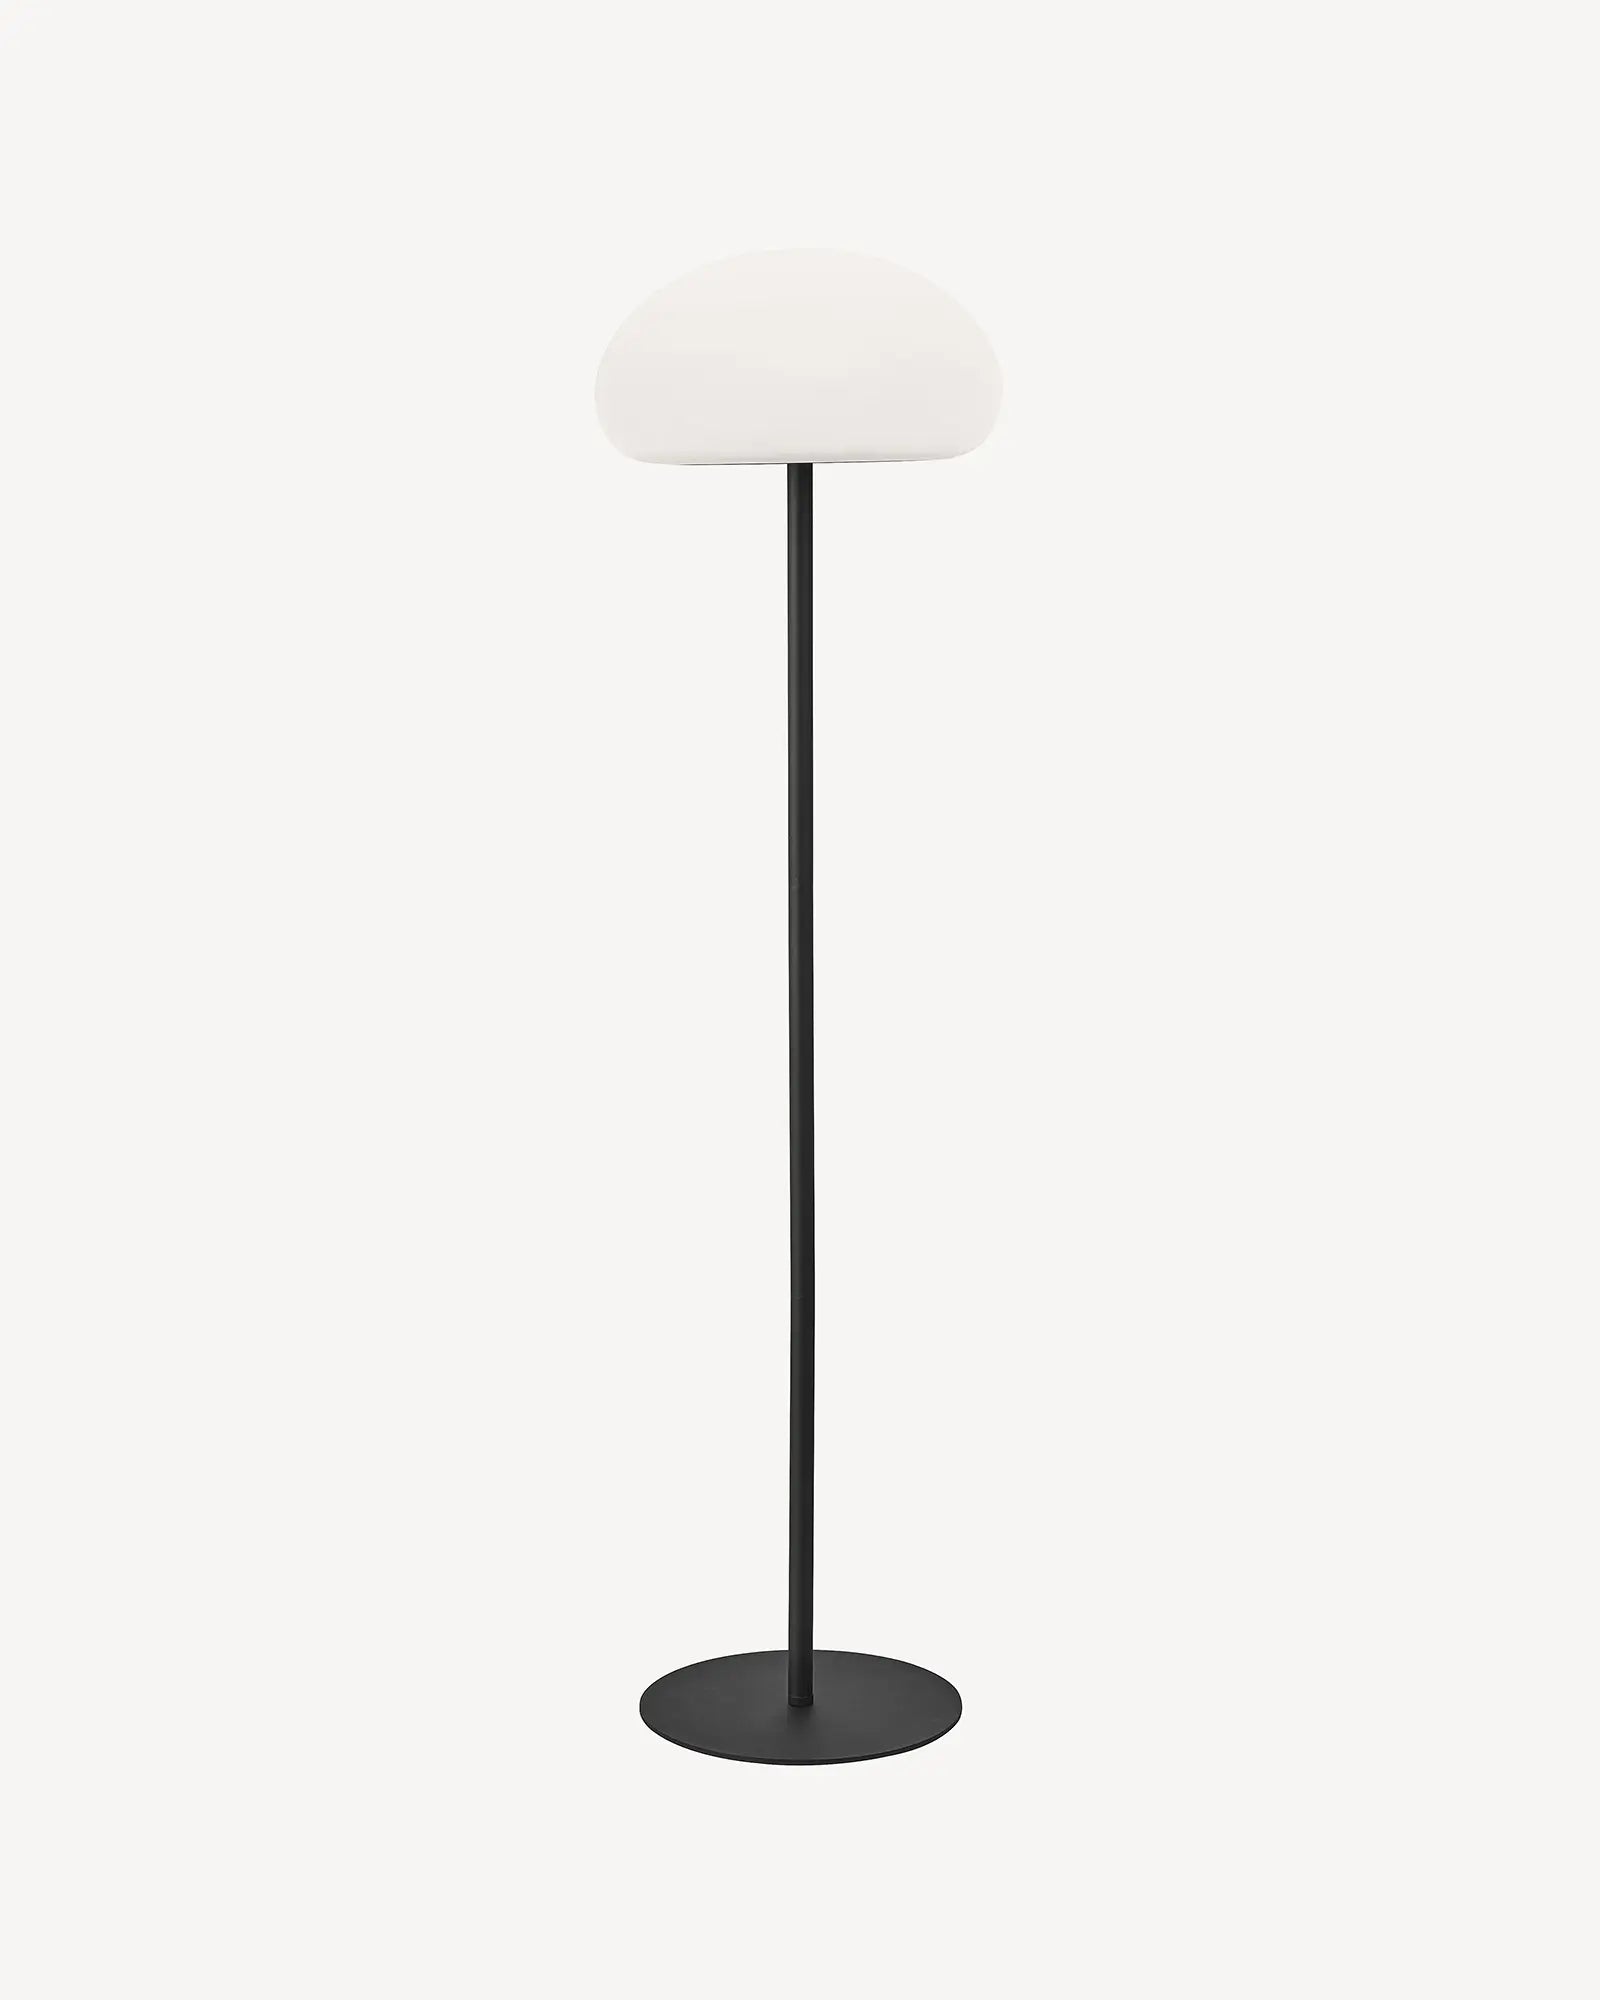 Sponge outdoor minimal floor lamp